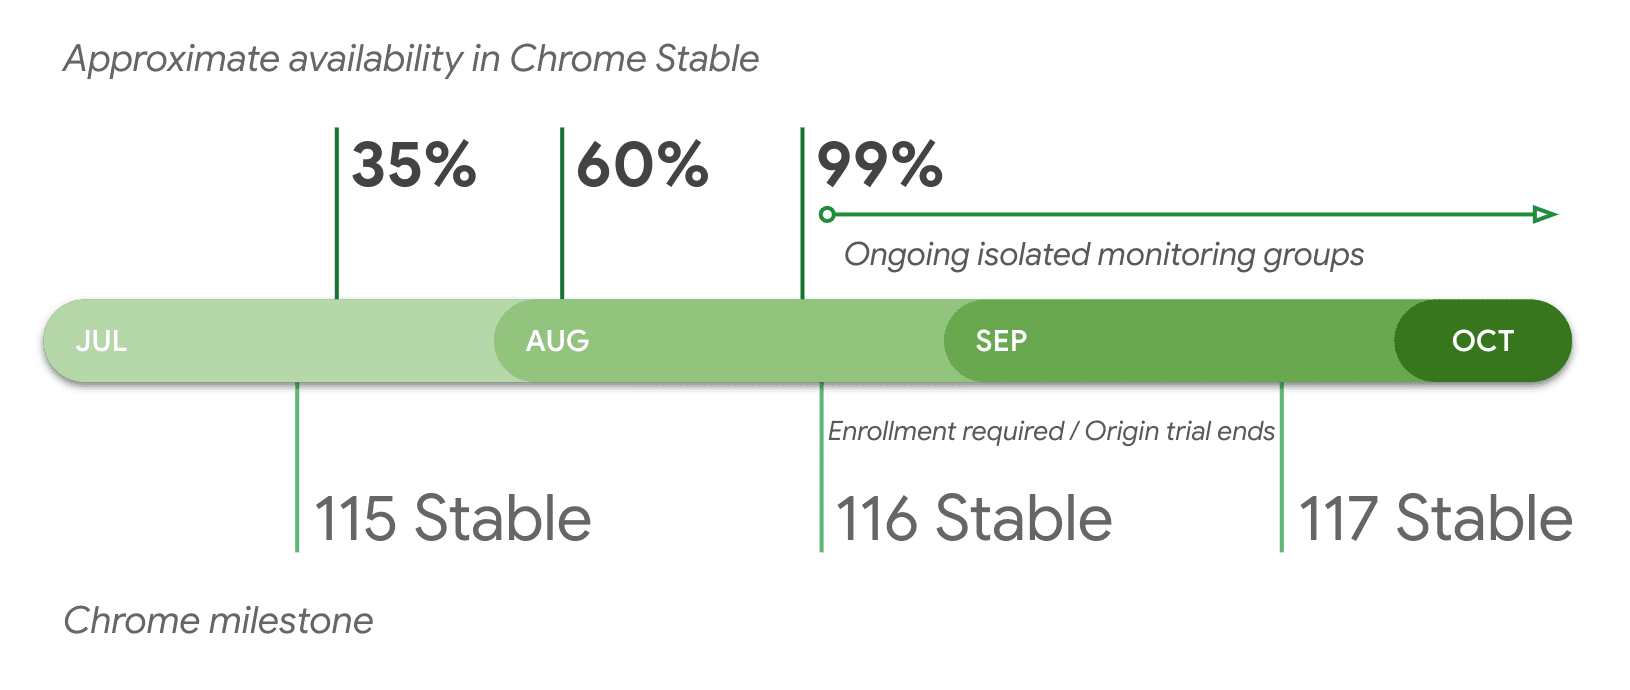 הזמינות המשוערת בגרסה היציבה של Chrome לפי גרסה.